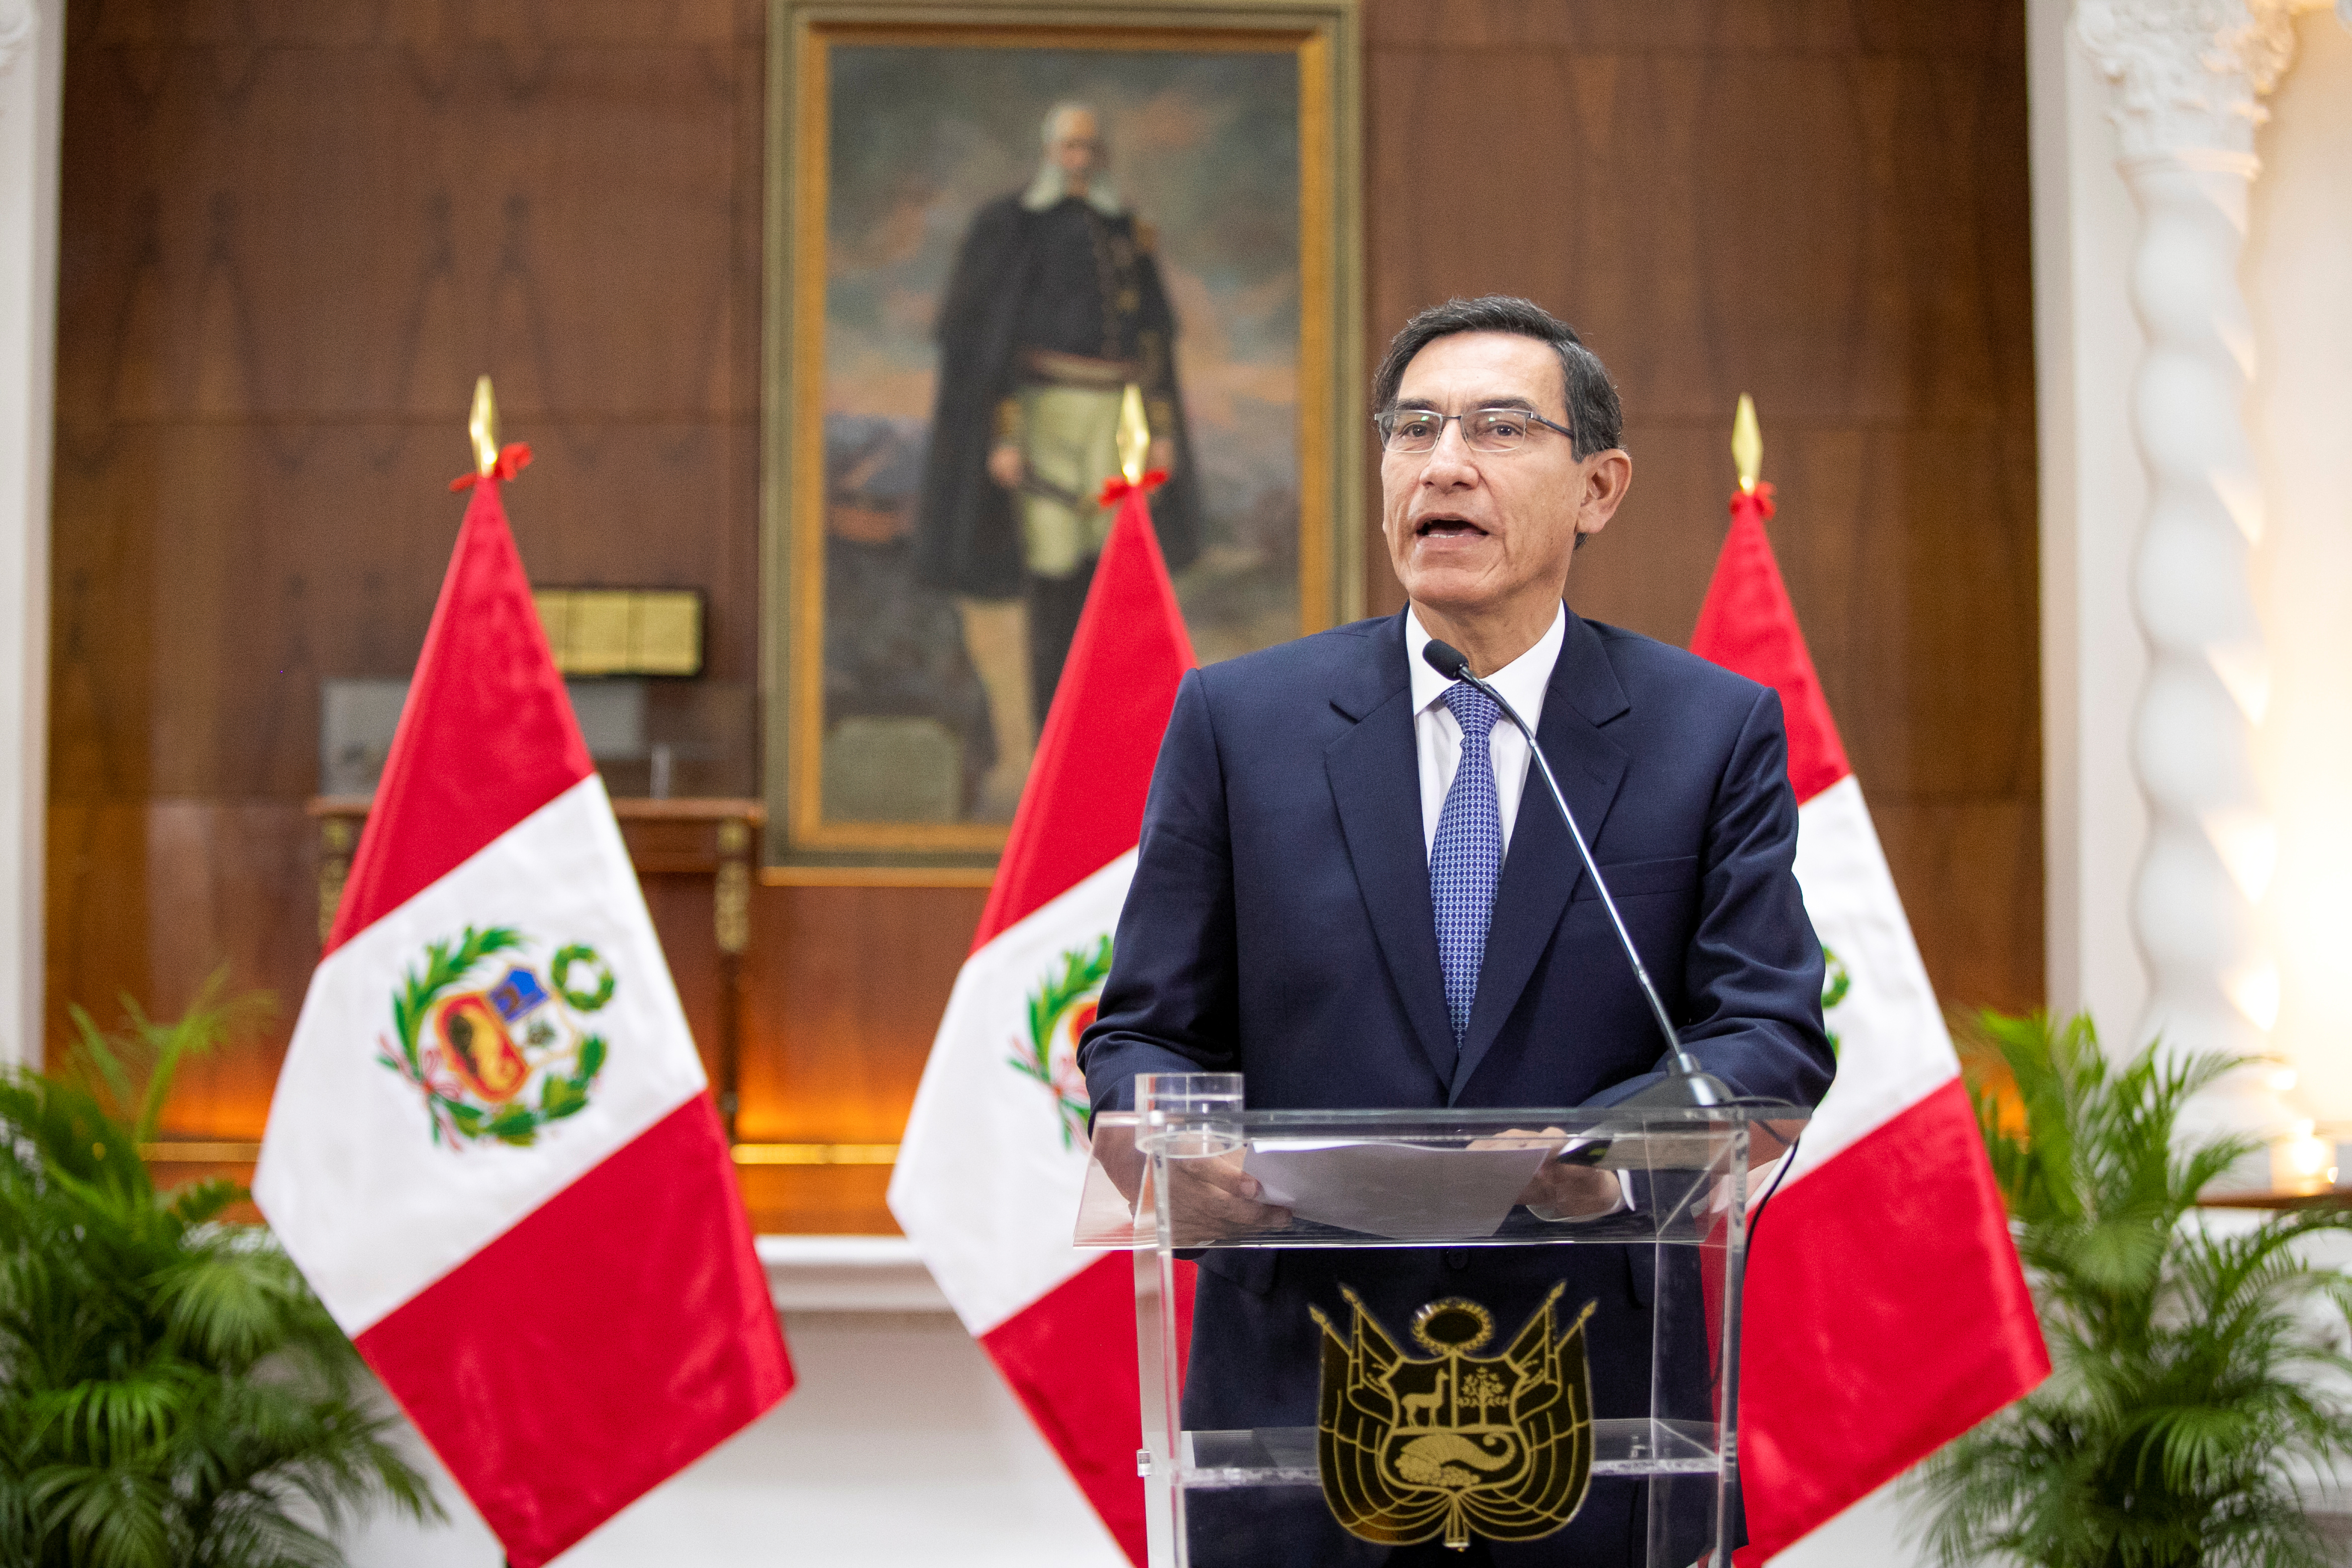 El presidente de Perú enfrenta un nuevo juicio de destitución